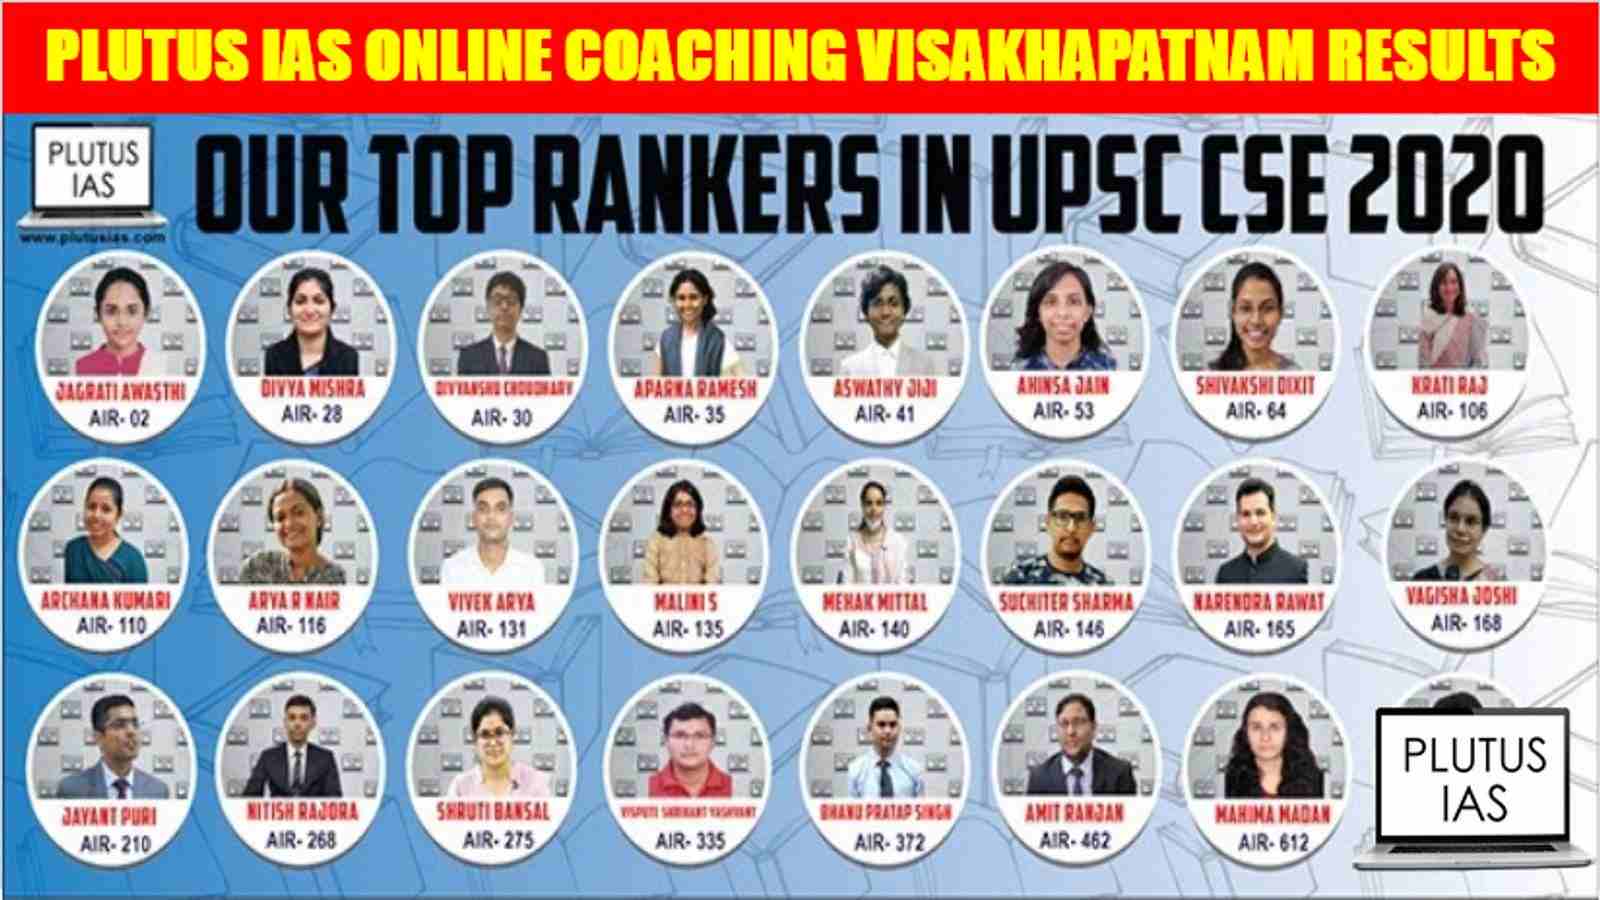 Plutus IAS Online Coaching Visakhapatnam Results